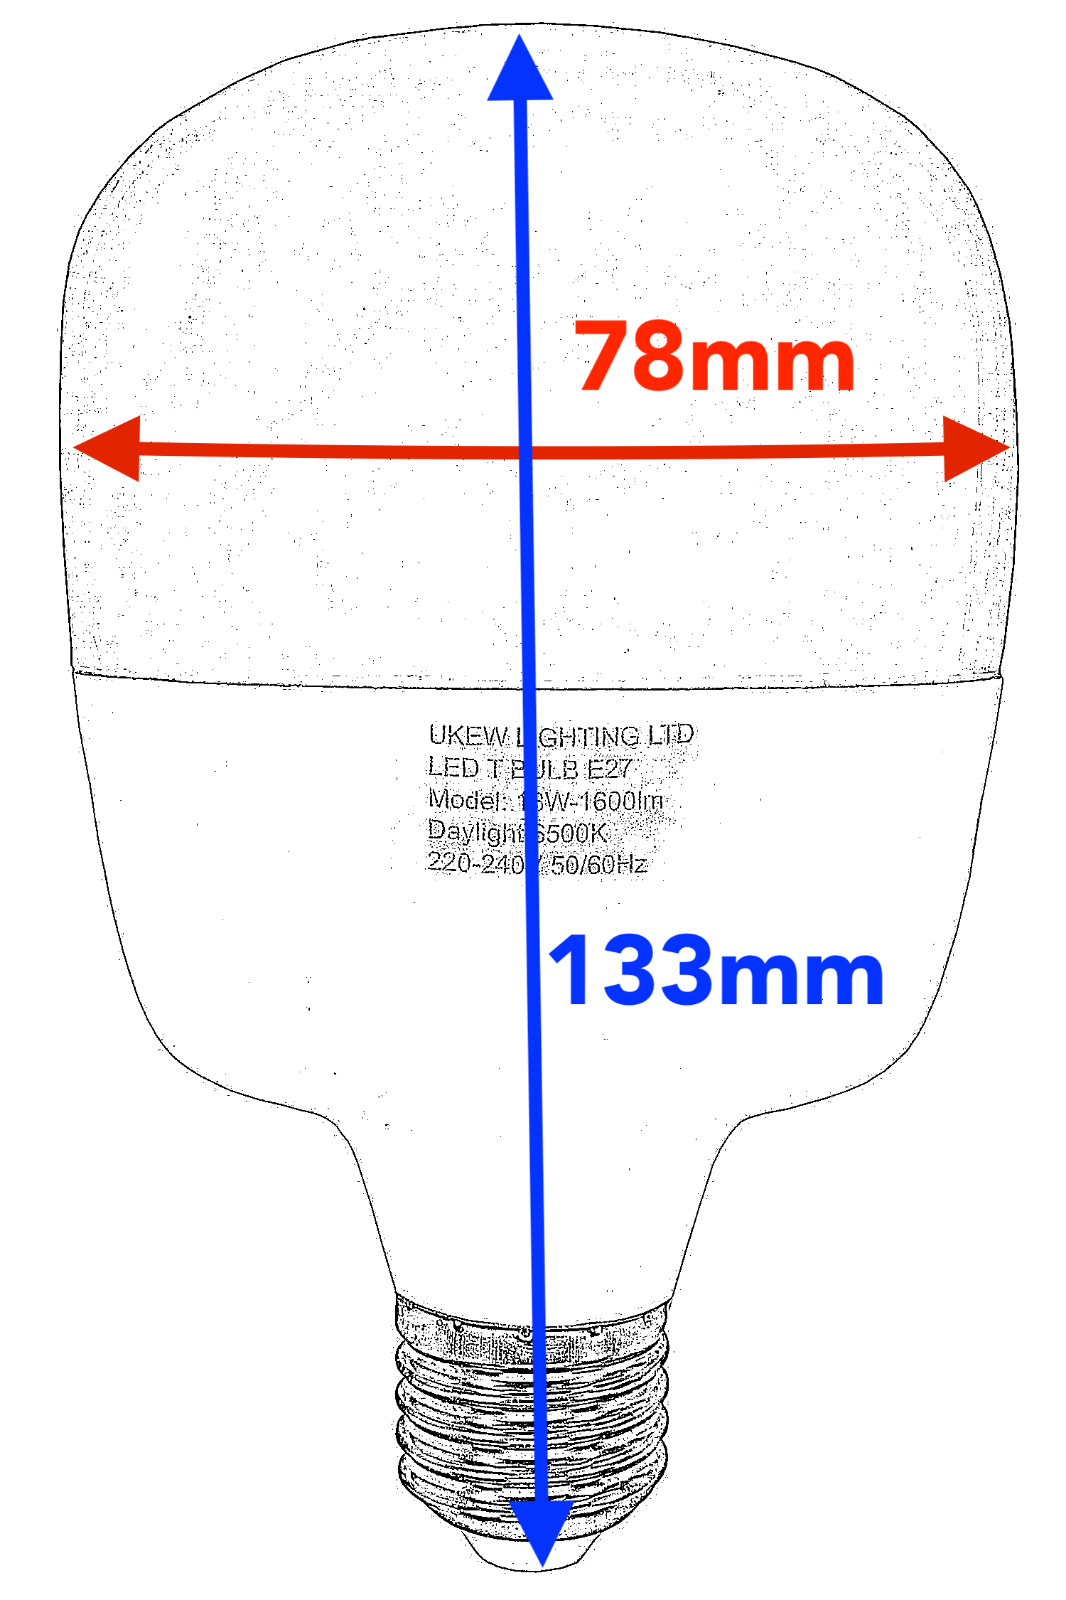 2 x Large ECO LED Light T-Bulb Lamp 18W E27 screw 1600Lumens  6500k eco+